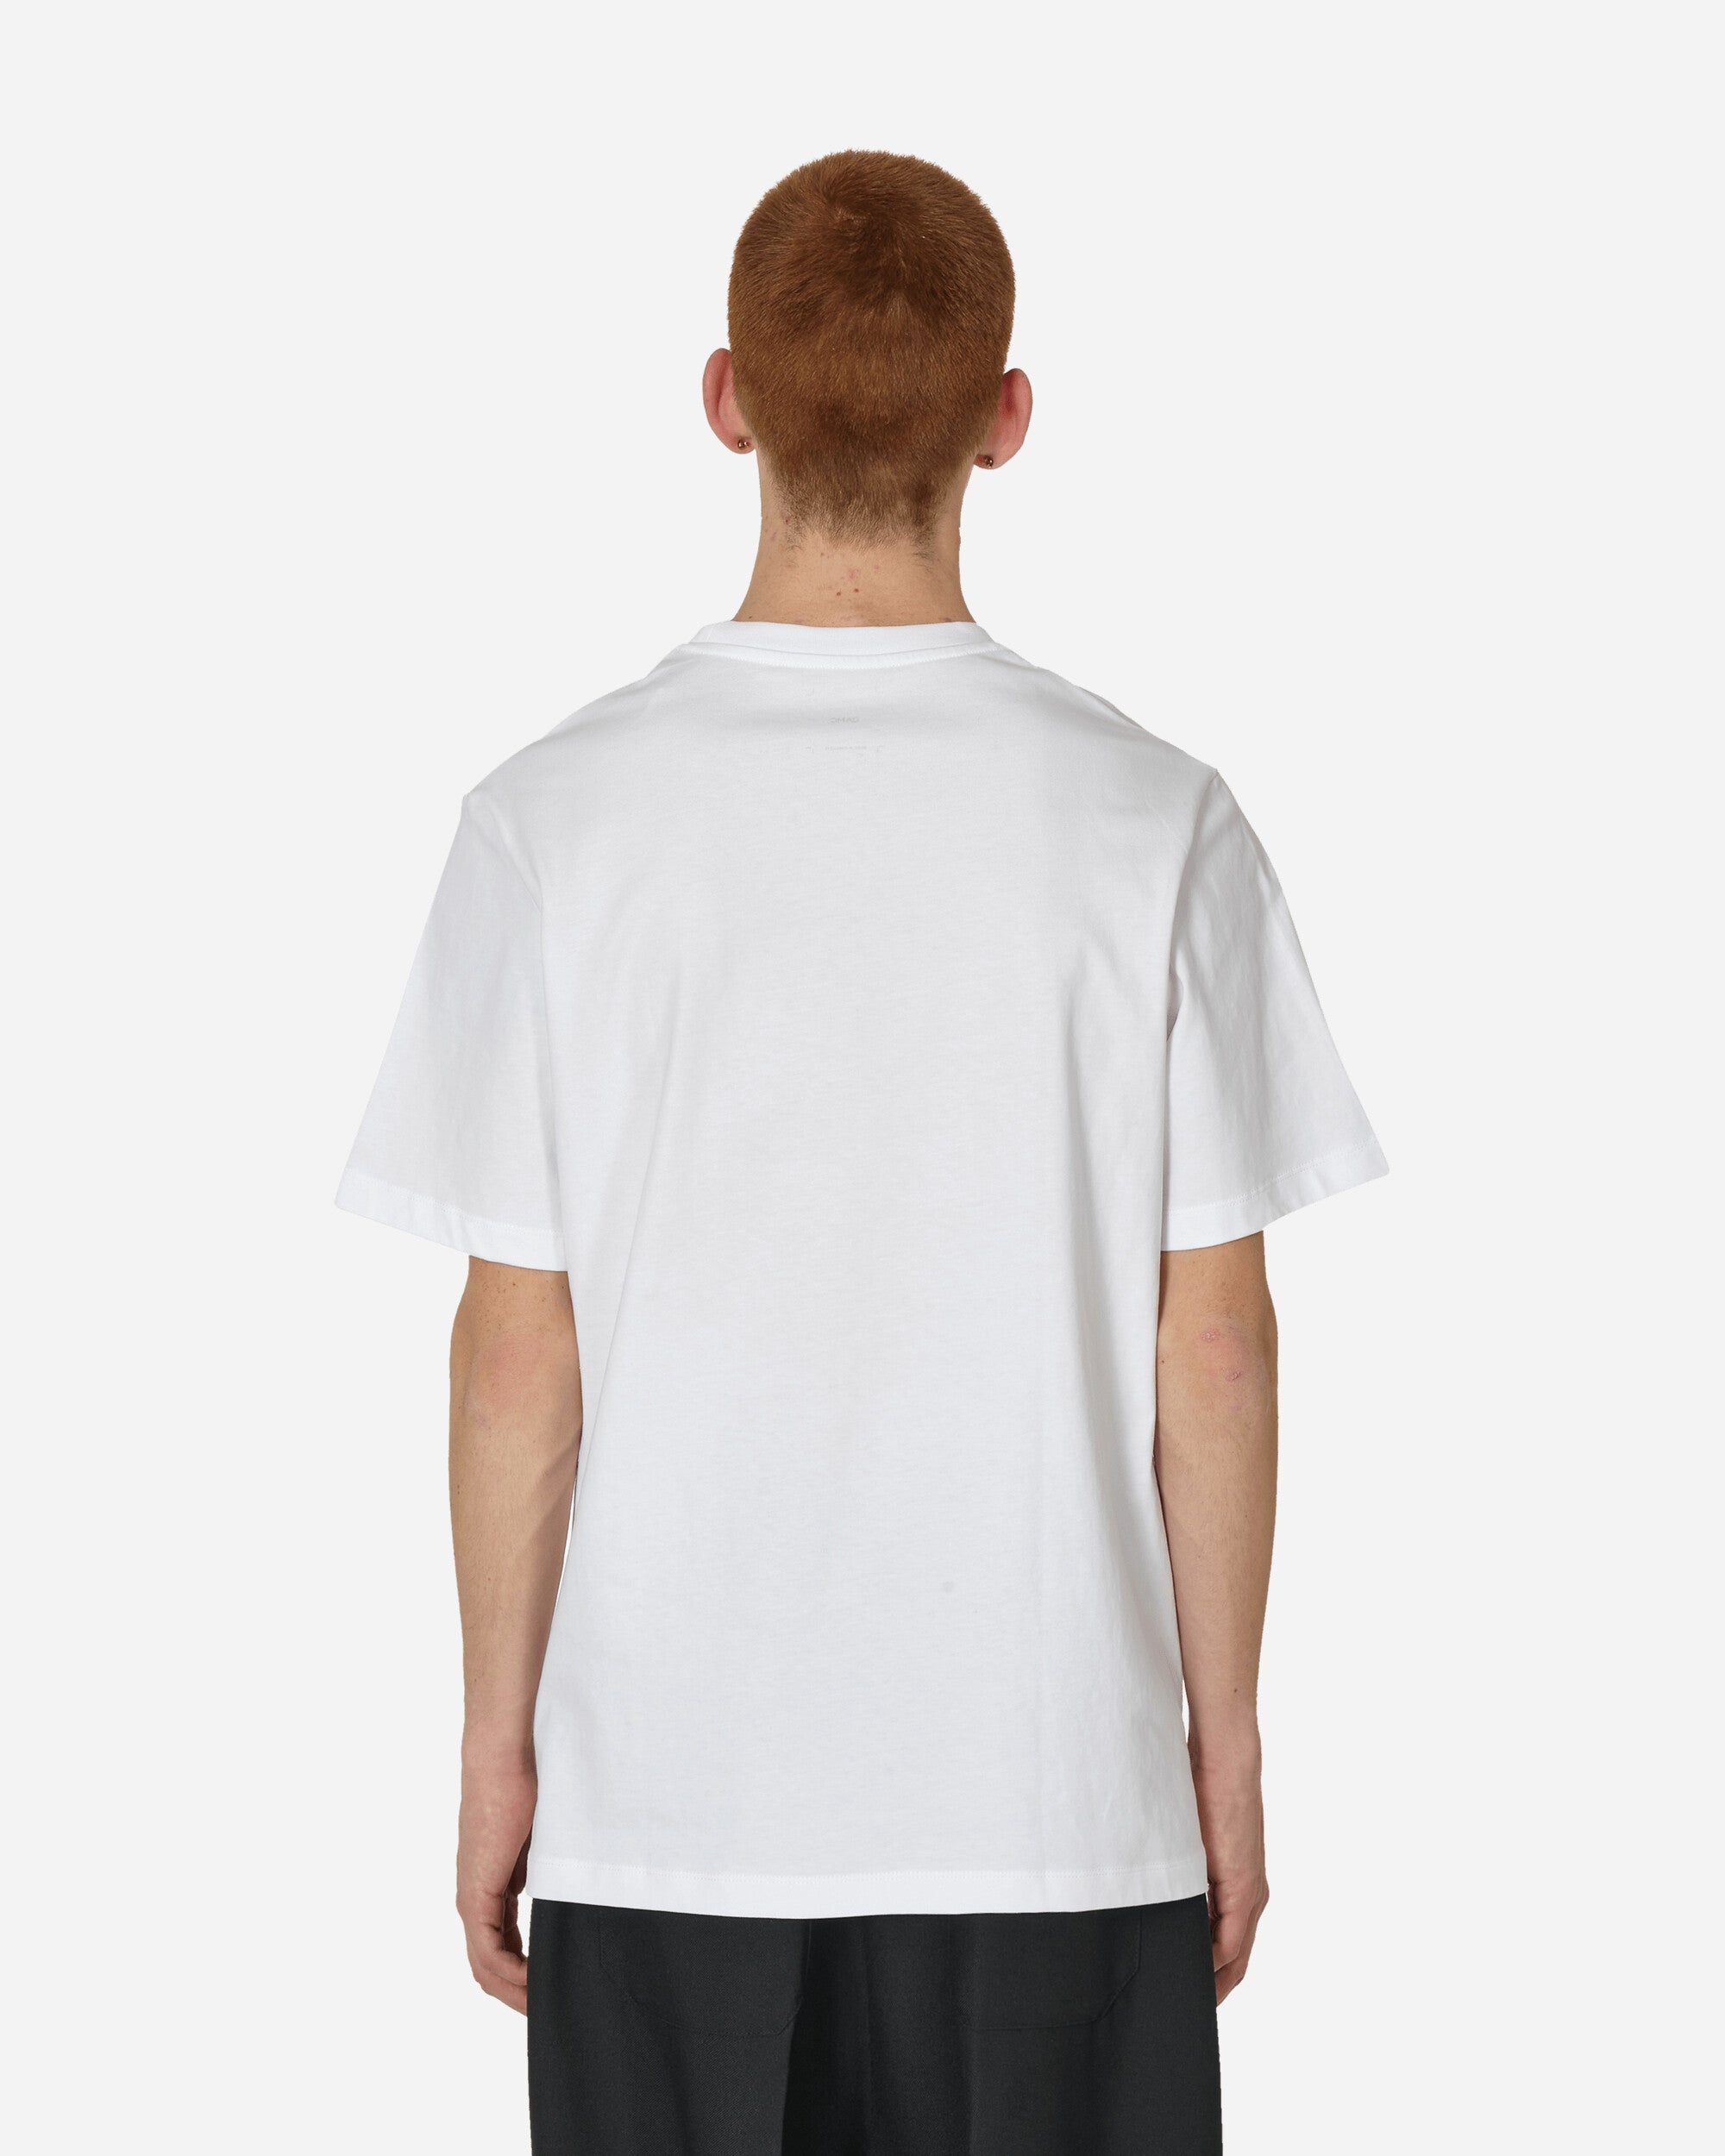 Apollo T-Shirt White - 3